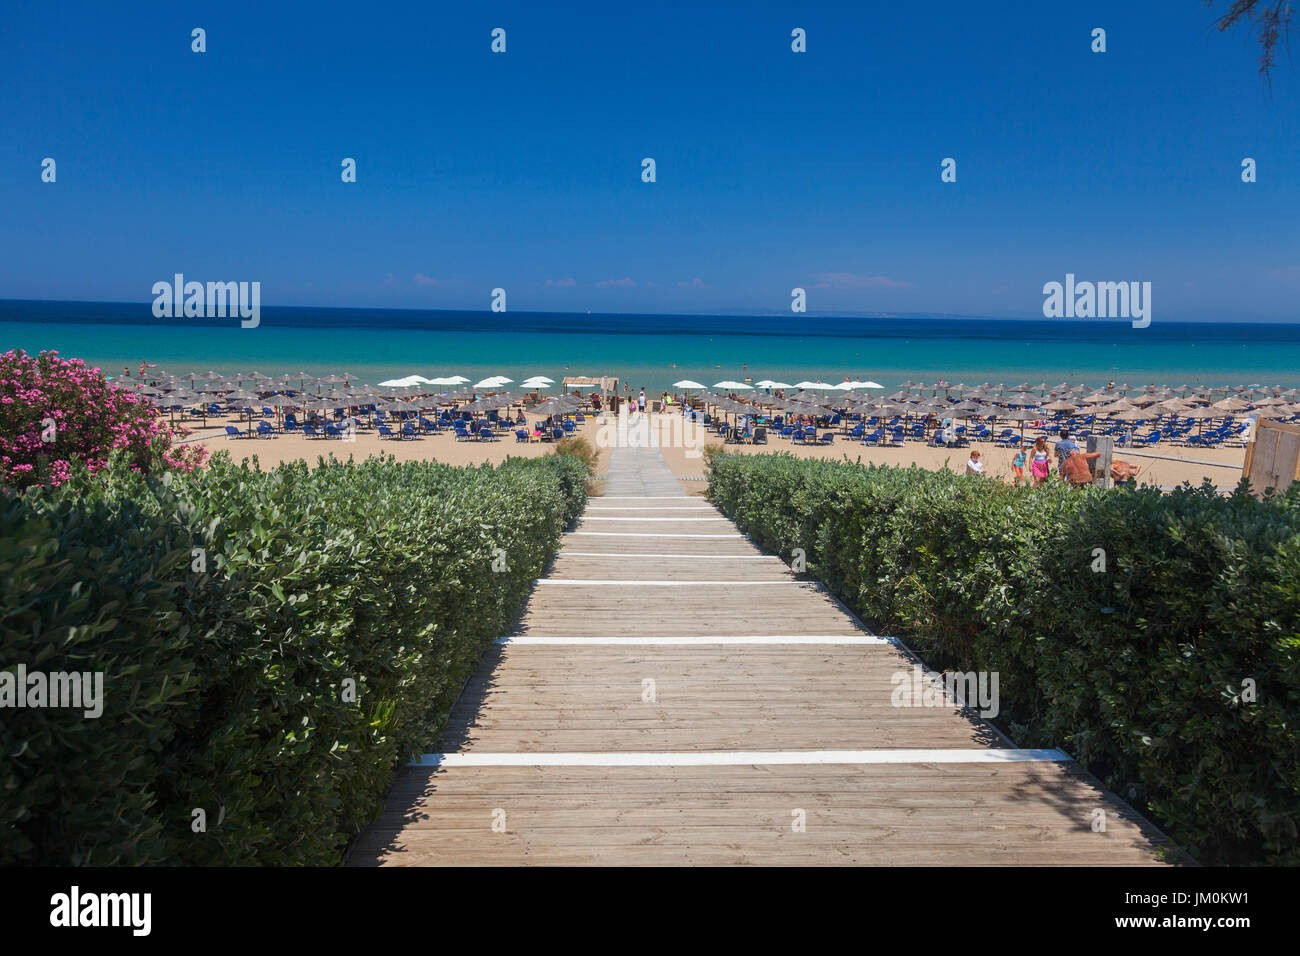 Voie de la célèbre plage de Banana,l'île de Zakynthos, Grèce Banque D'Images